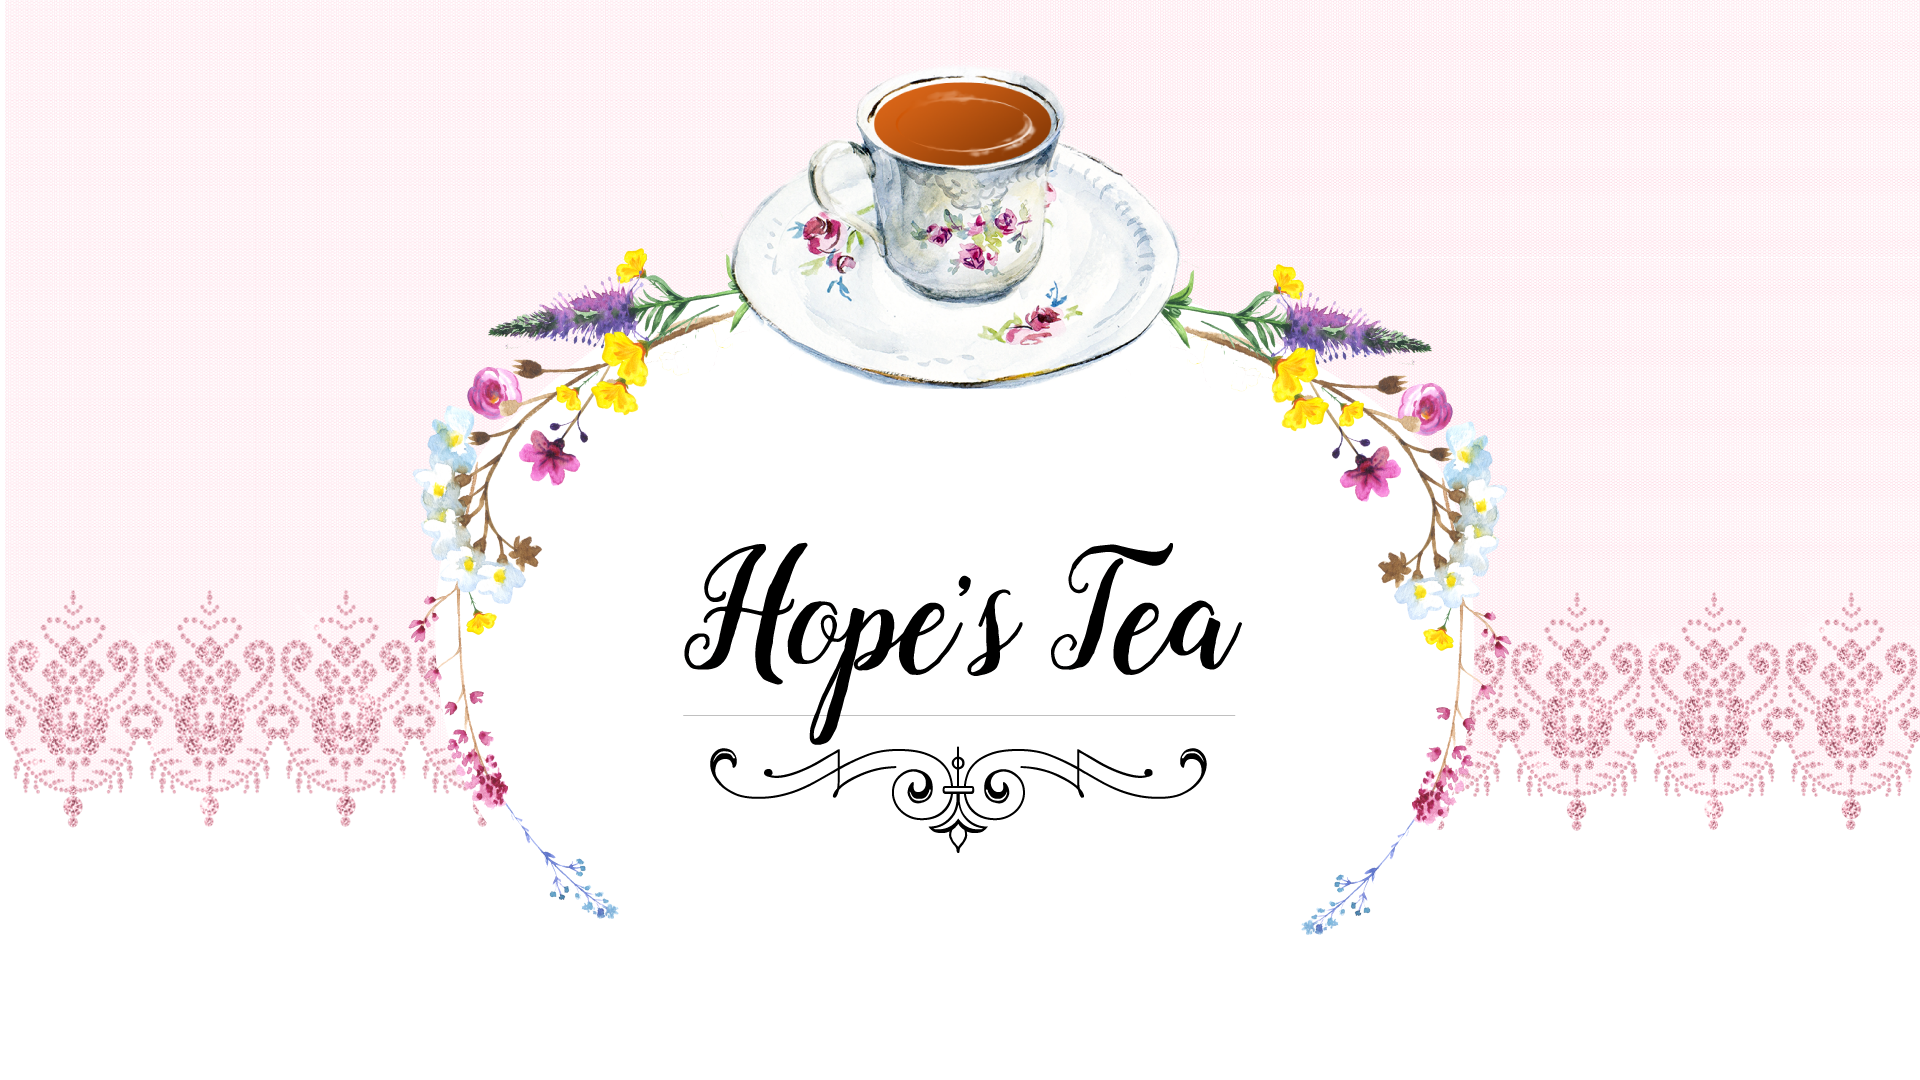 Hope’s Tea